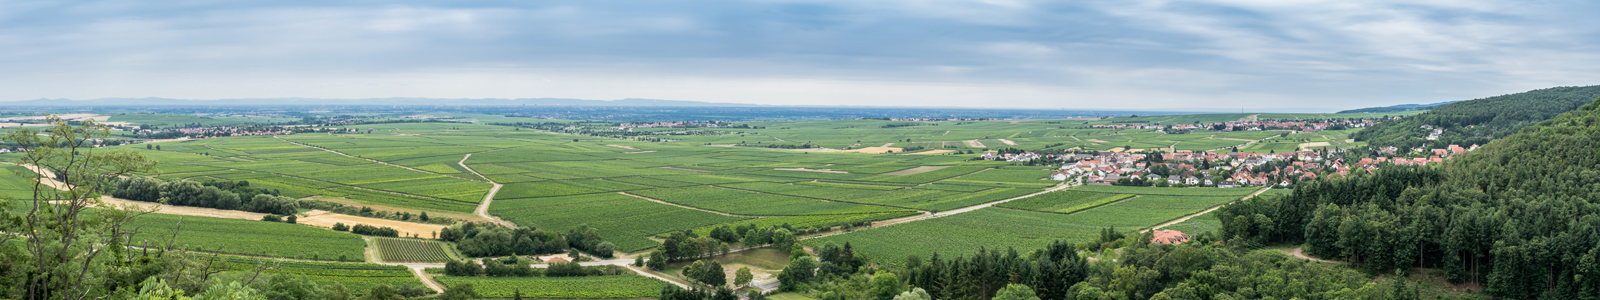 Landschaft mit Weinbergen und Dorf ©K. Ruschmaritsch